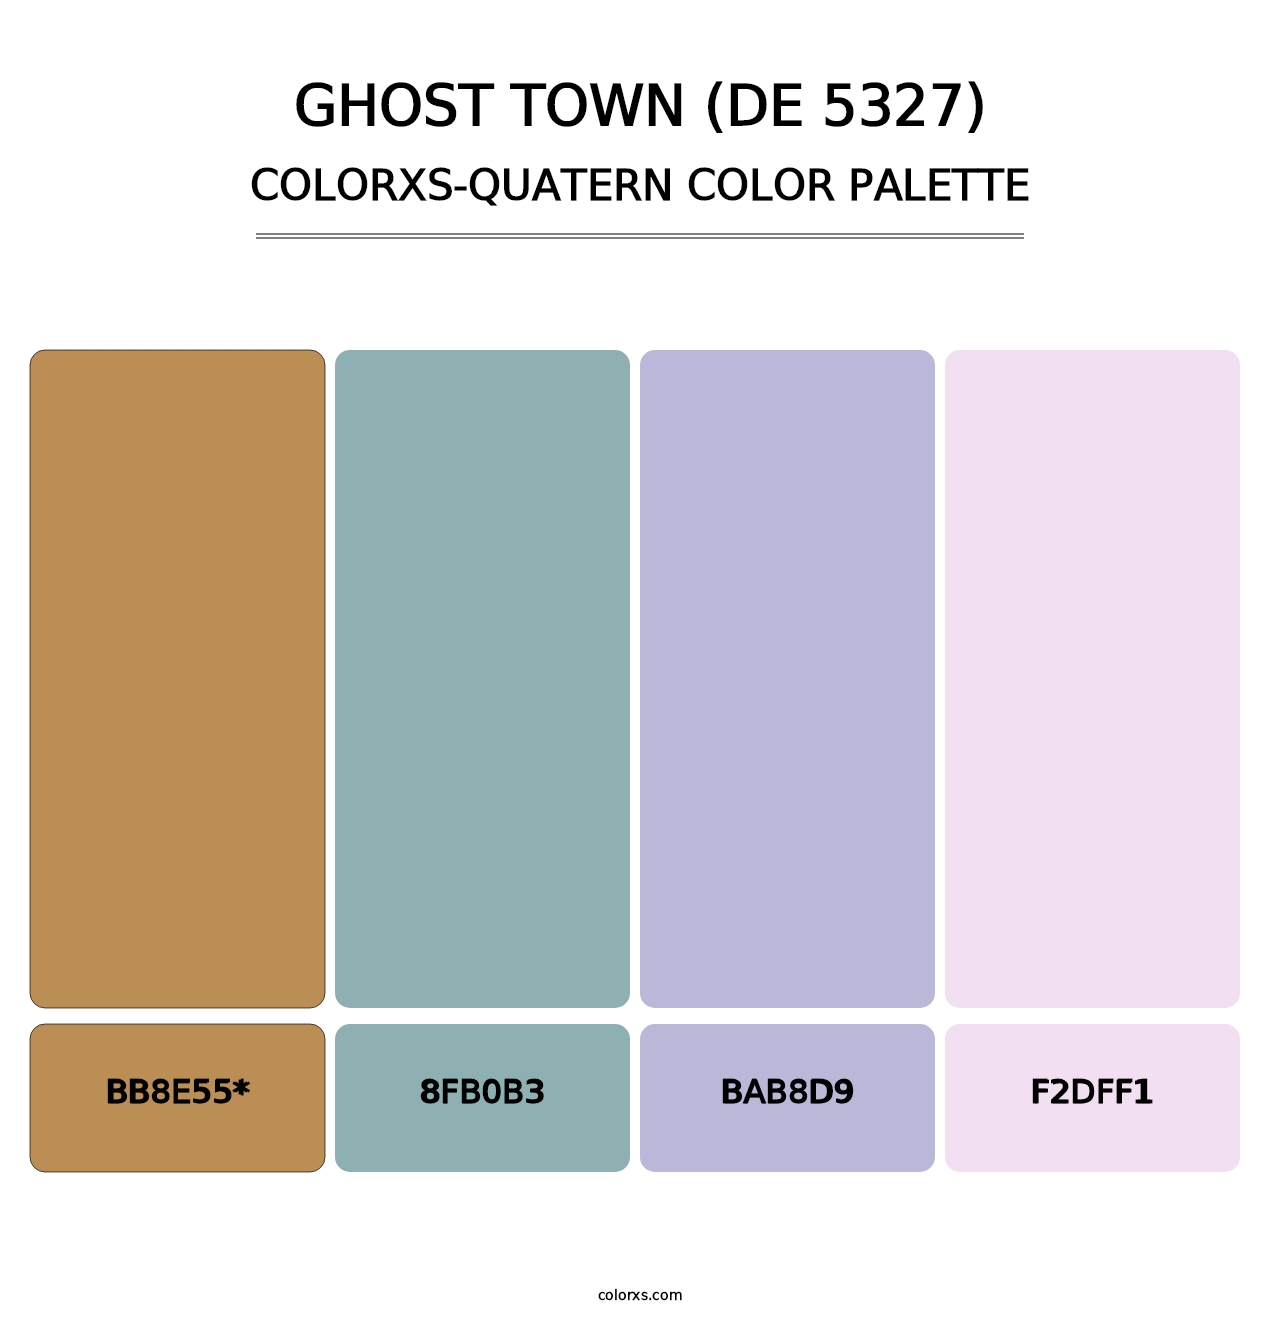 Ghost Town (DE 5327) - Colorxs Quatern Palette